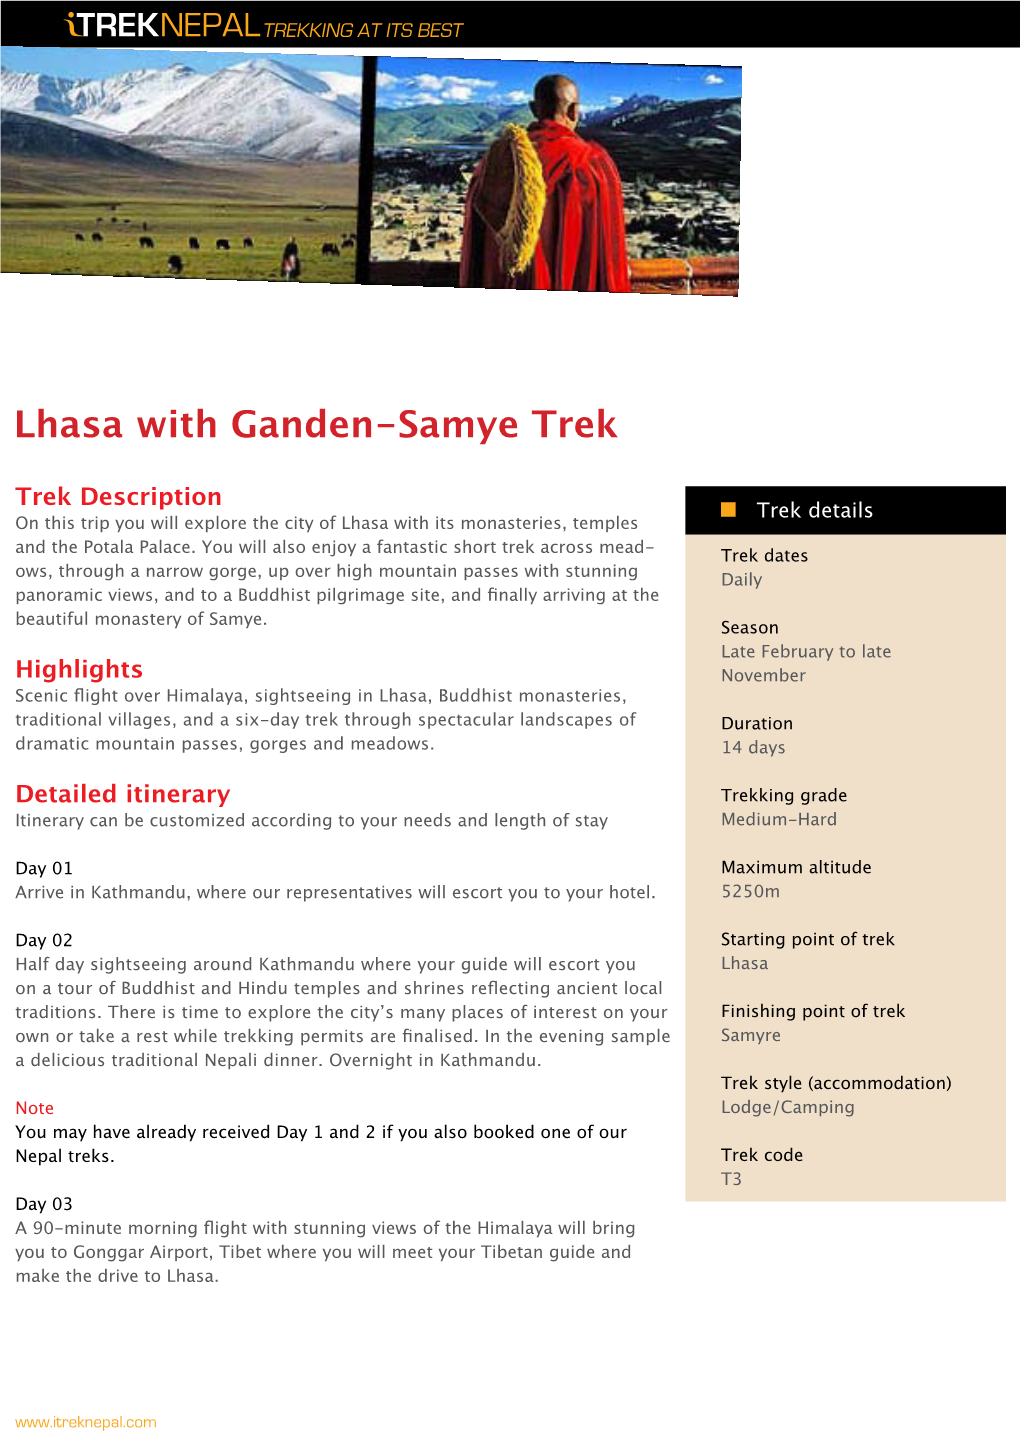 Lhasa with Ganden-Samye Trek